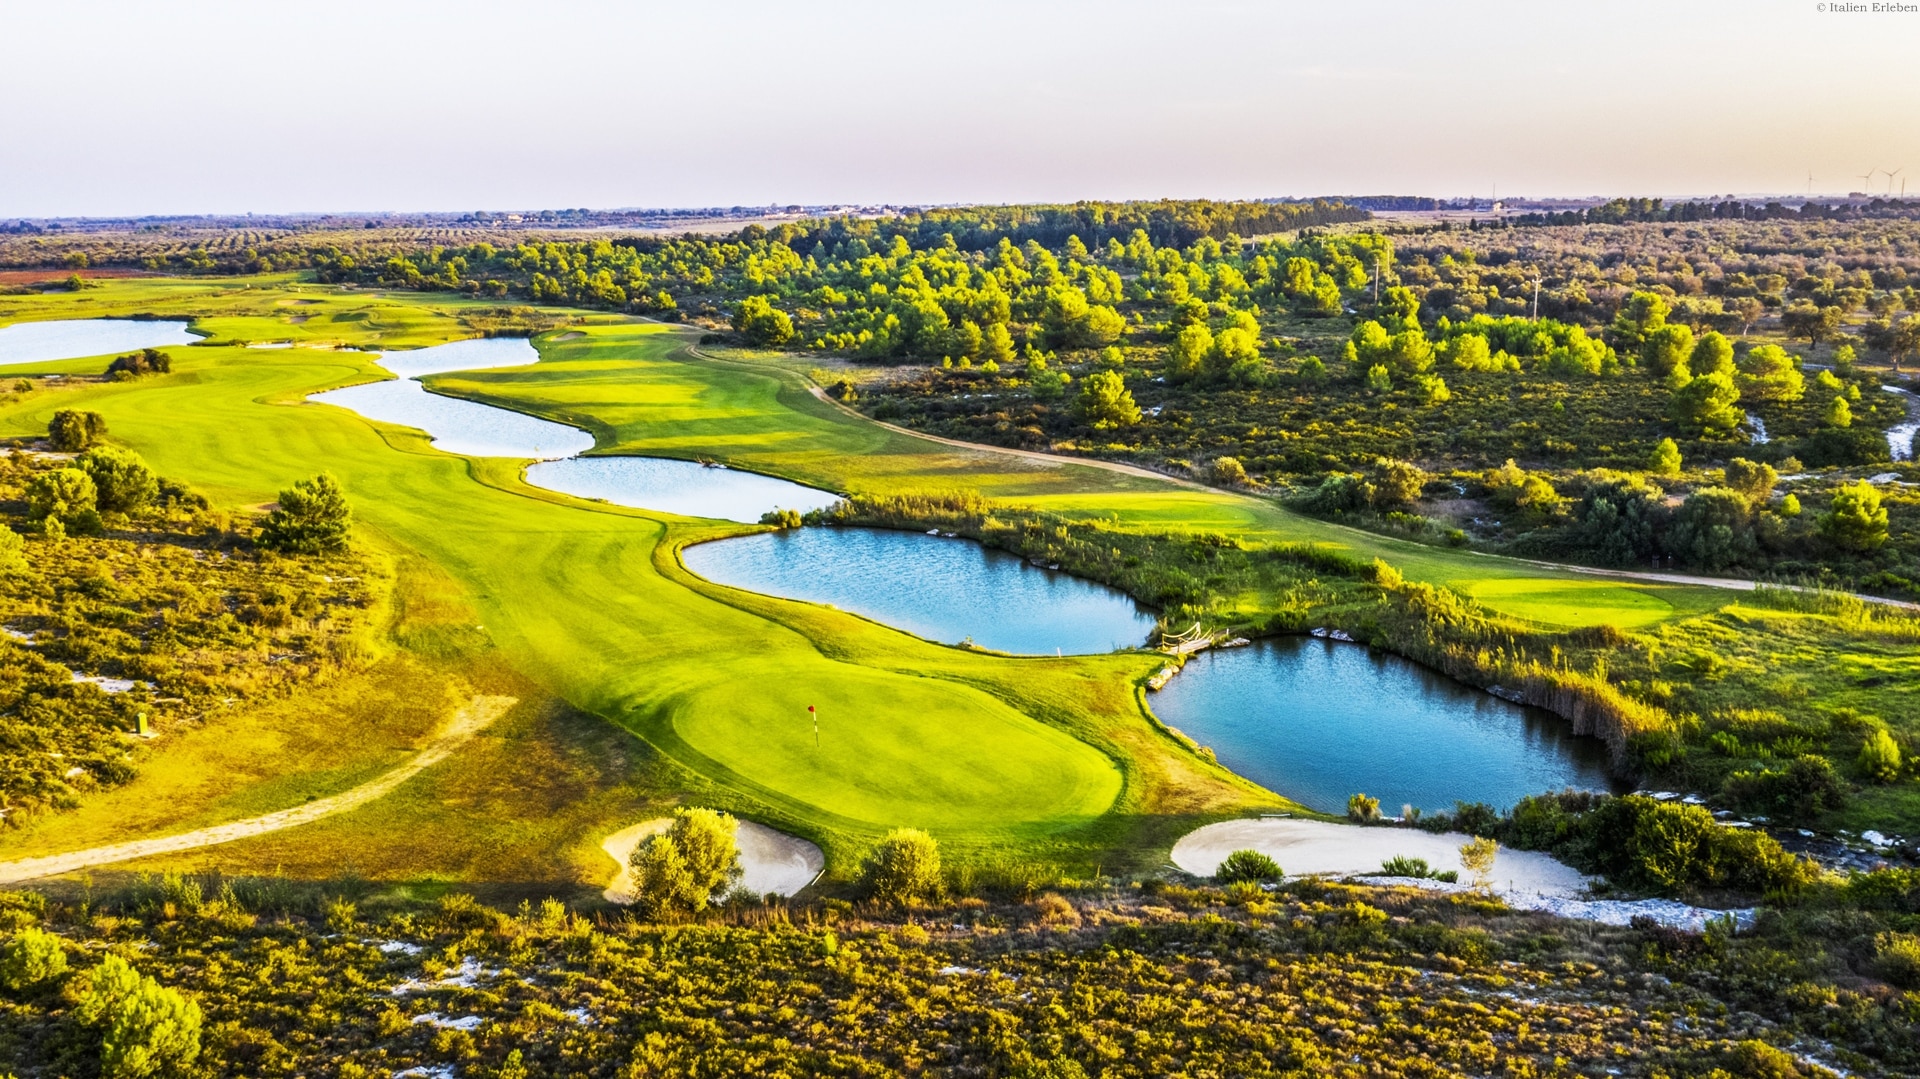 Apulien Golf Resort Acaya Lecce Salento 18 Loch Anlage modern Landschaft Wellness Golfplatz Wasser Green